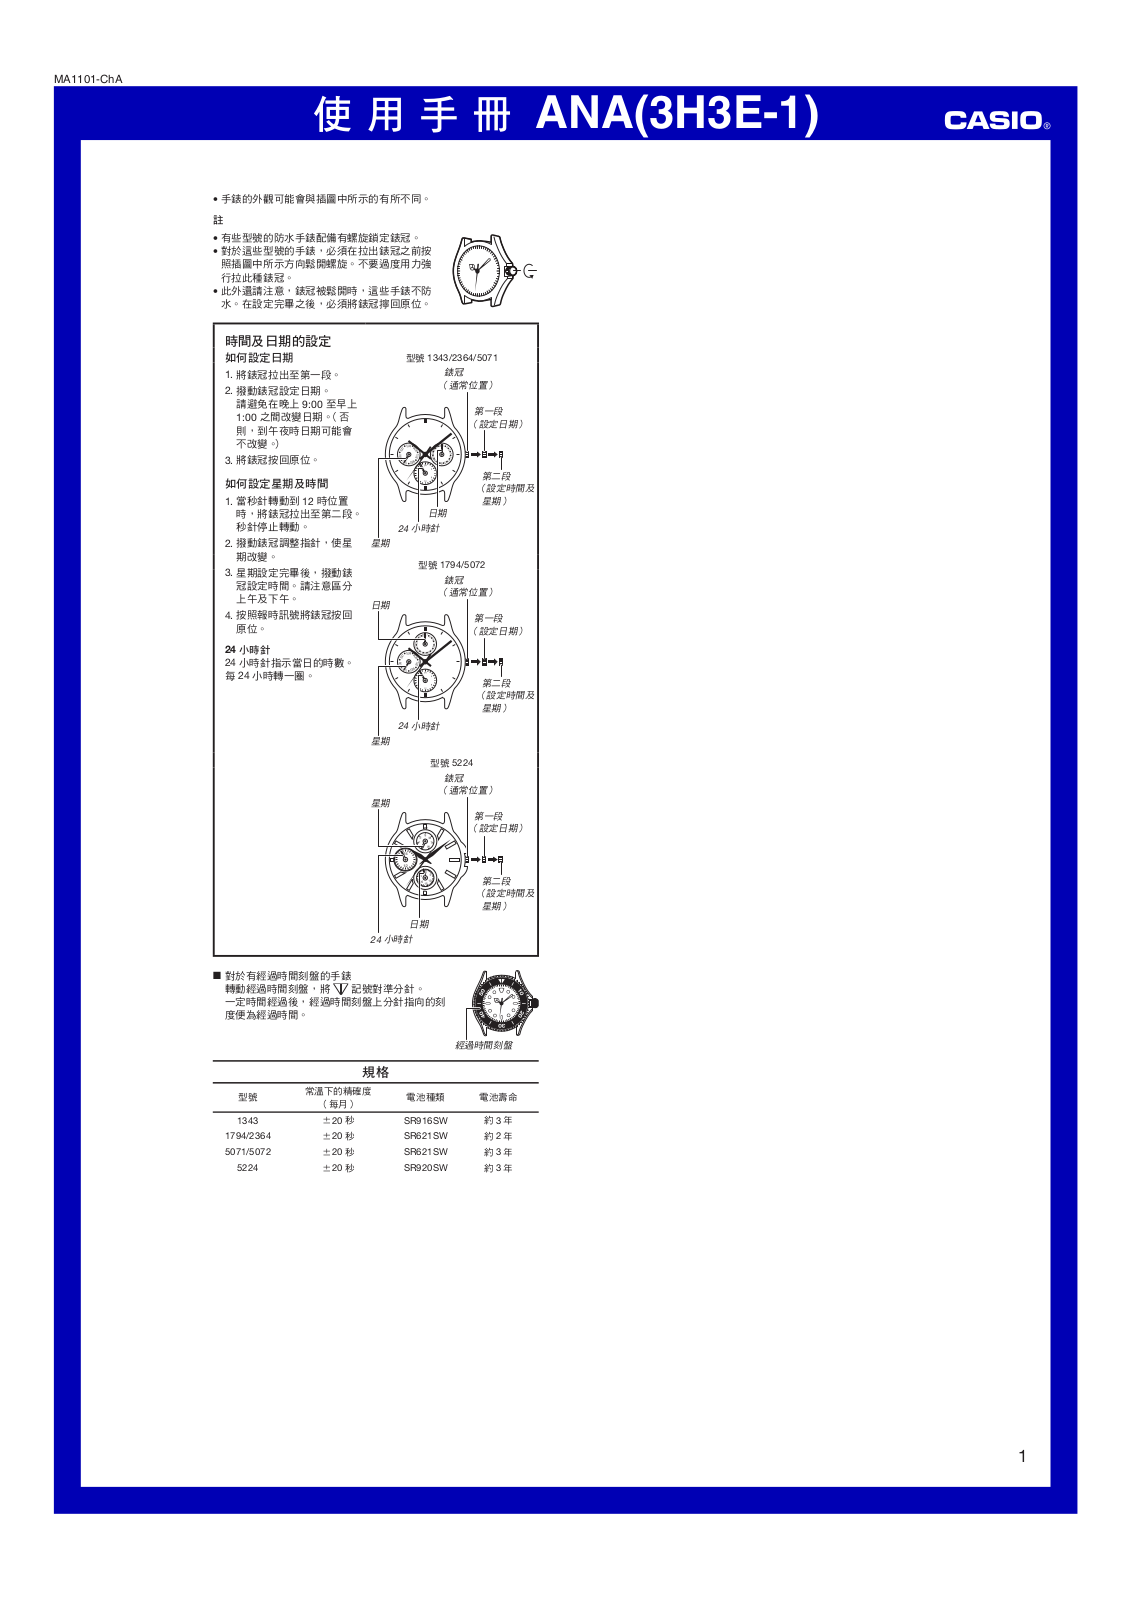 CASIO 5224 User Manual